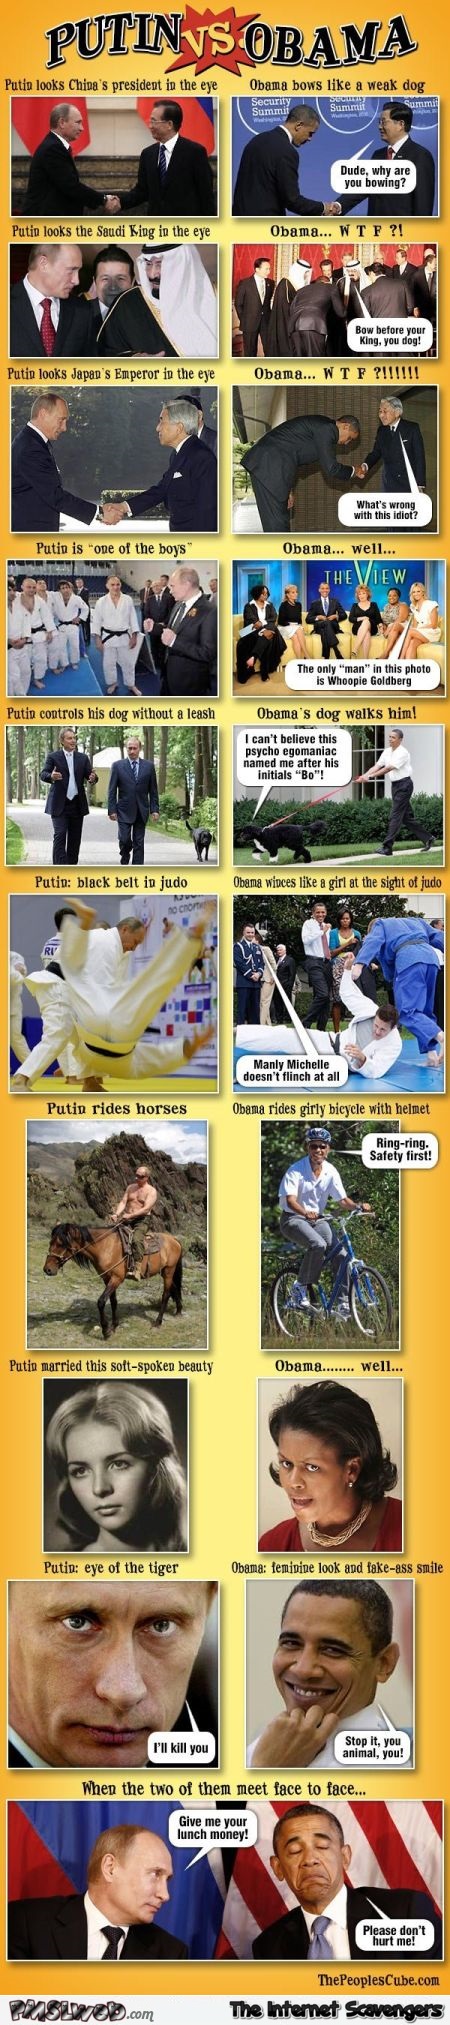 Funny Putin versus Obama @PMSLweb.com